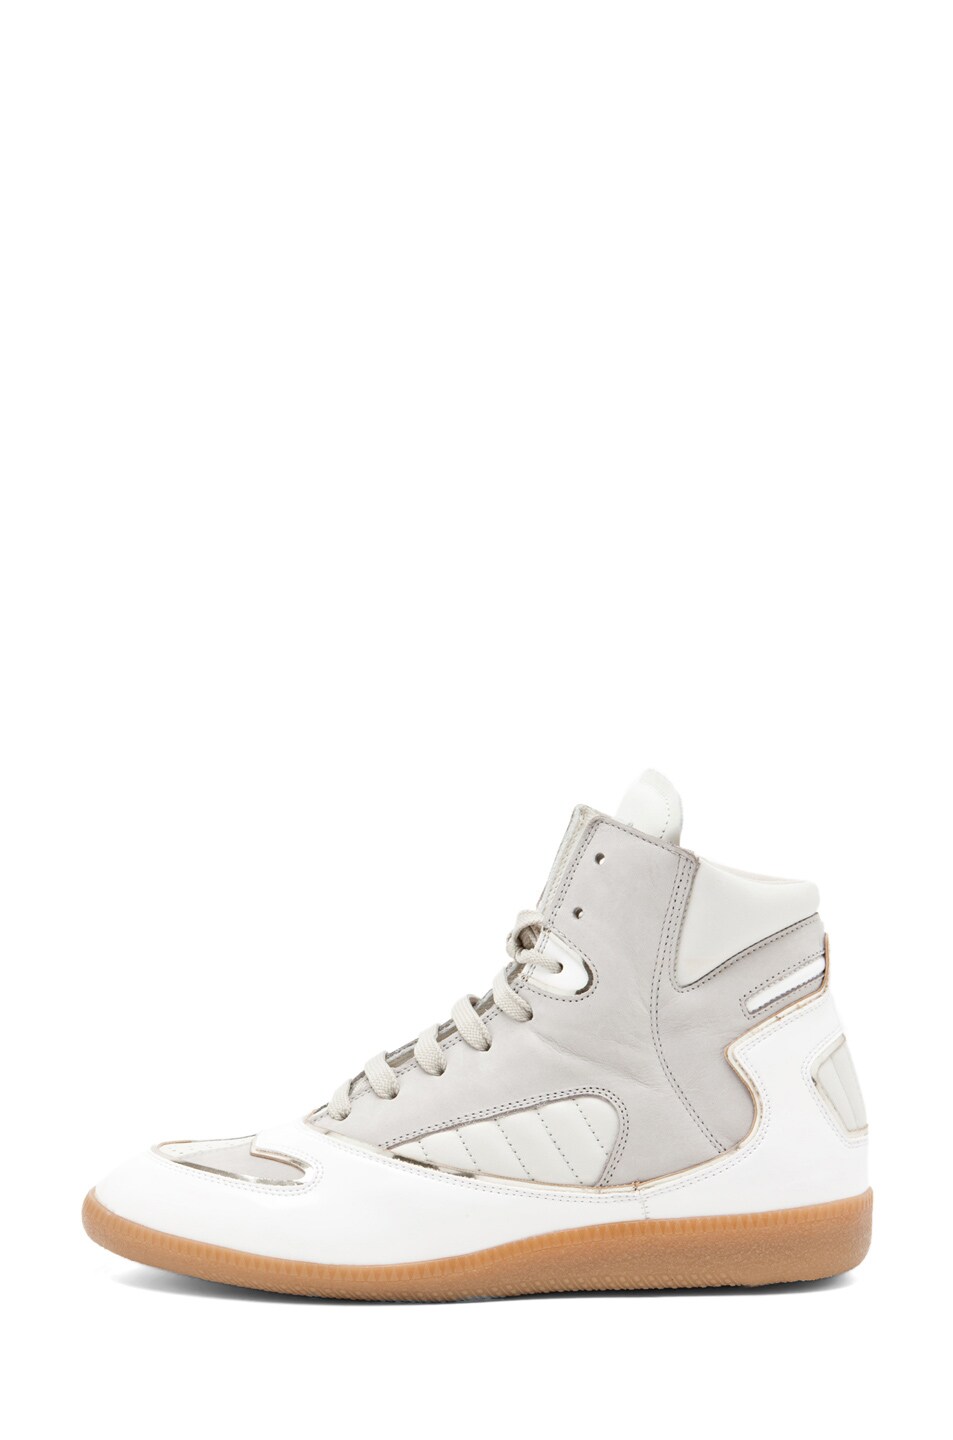 Maison Margiela Hi Top Sneaker in White | FWRD